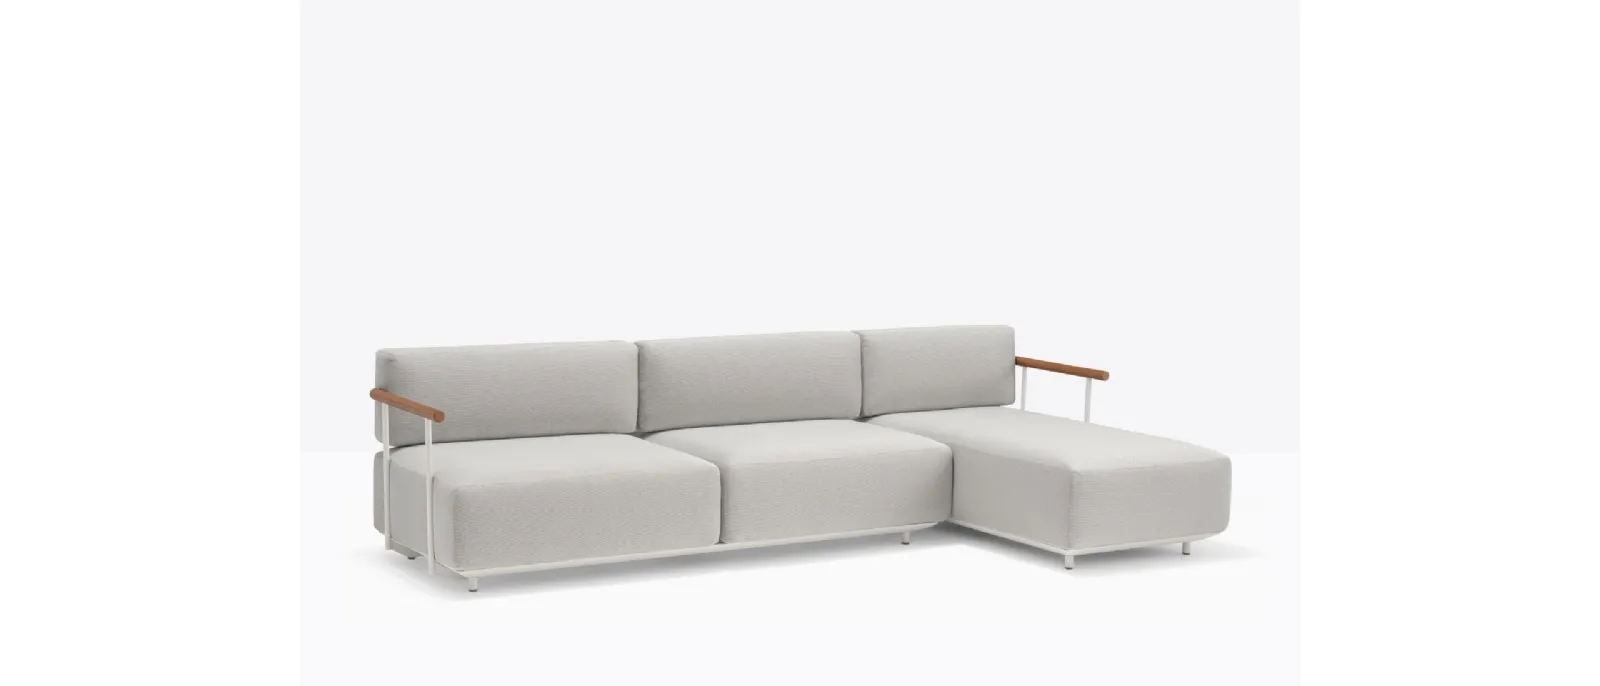 Divano in tessuto imbottito componibile con struttura in alluminio Arki-sofa di Pedrali